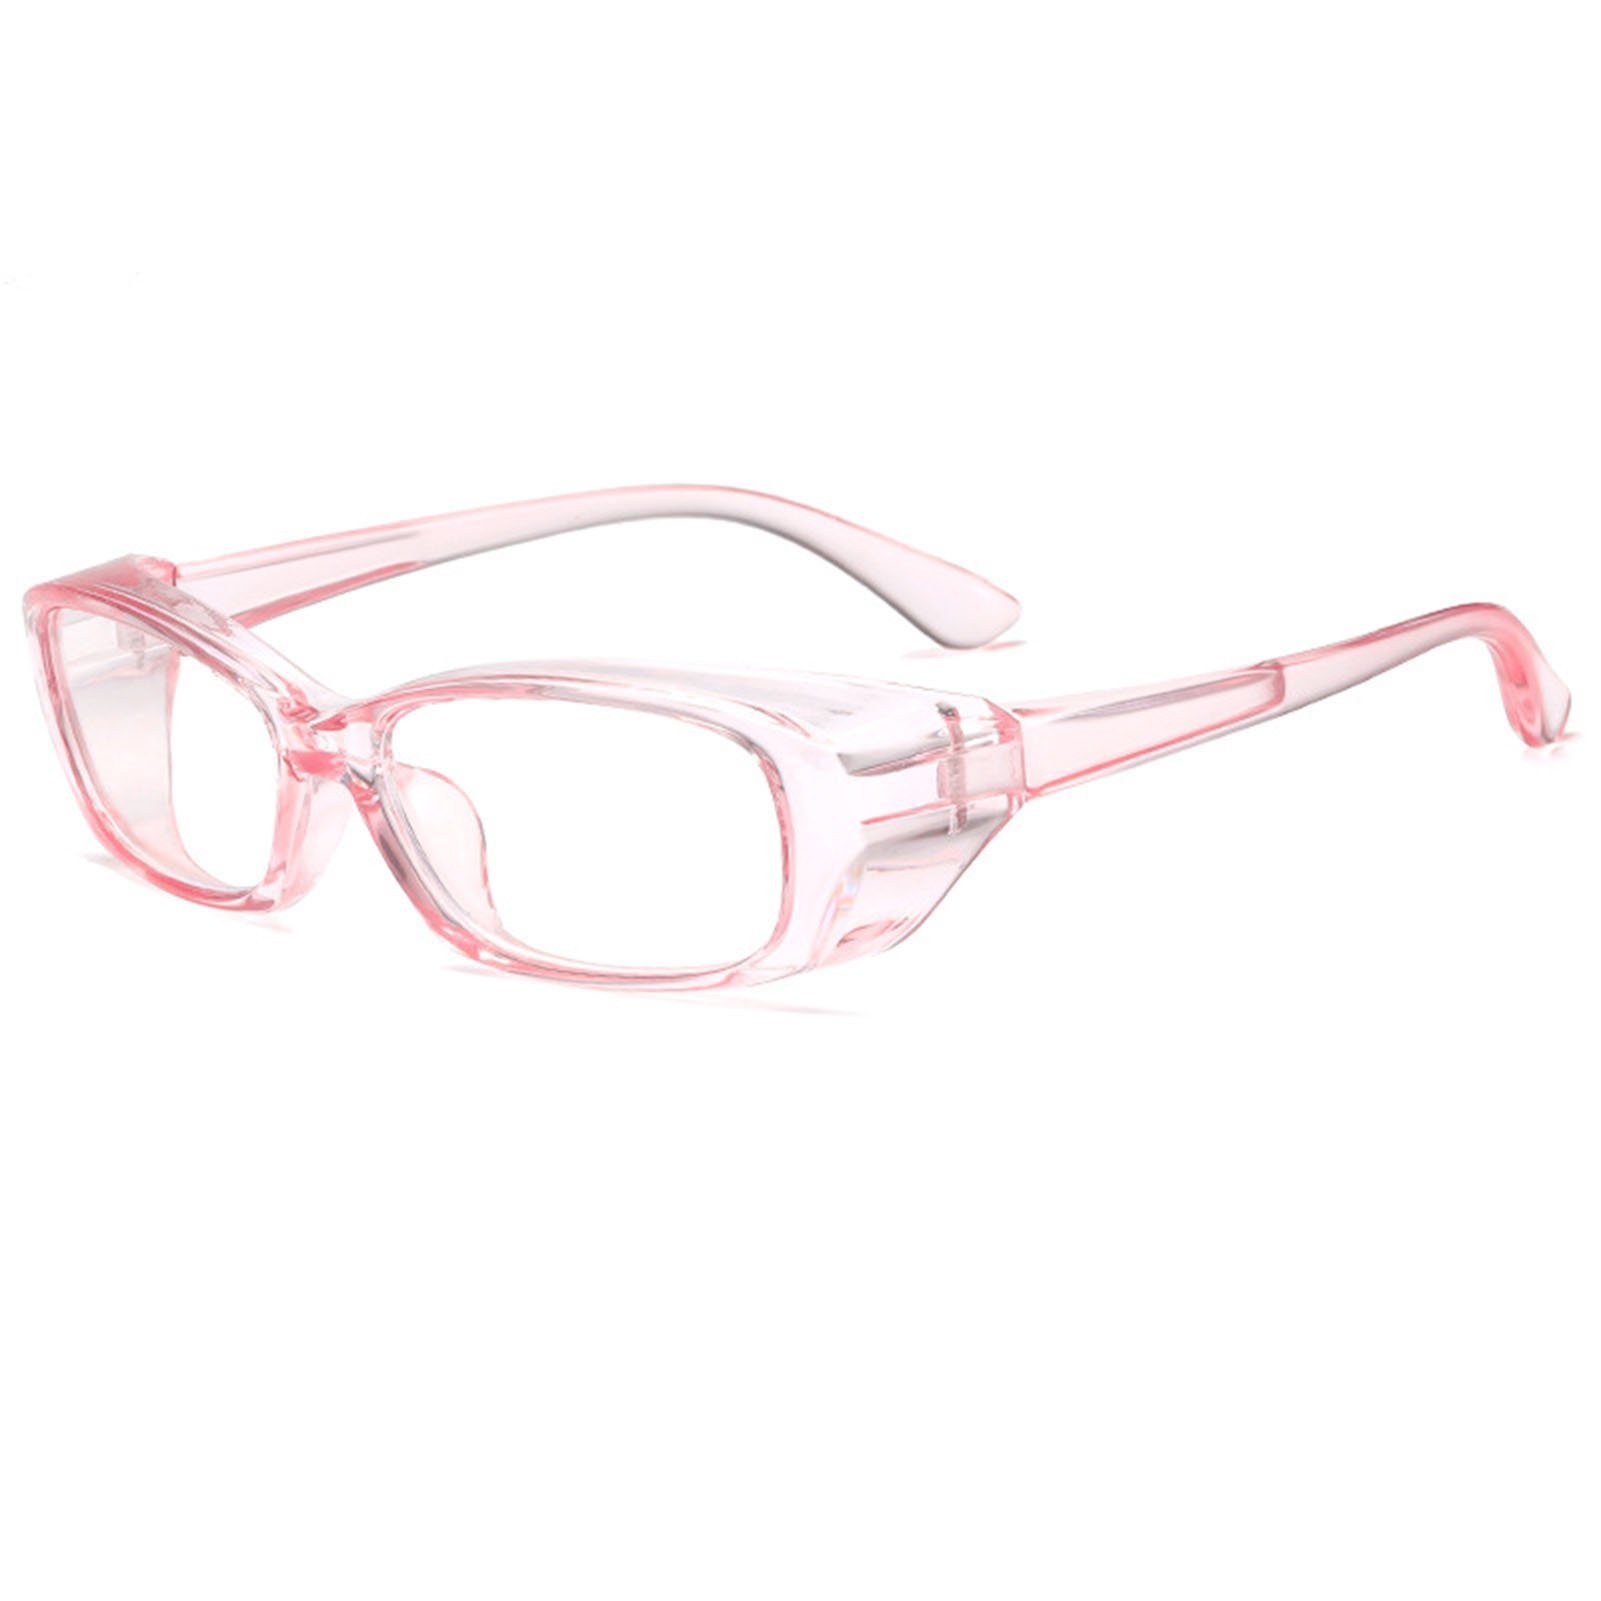 Außenbereich, Den Anti-Beschlag-Schutzbrille Für Brille pink transparent Brille Bequeme, Blusmart